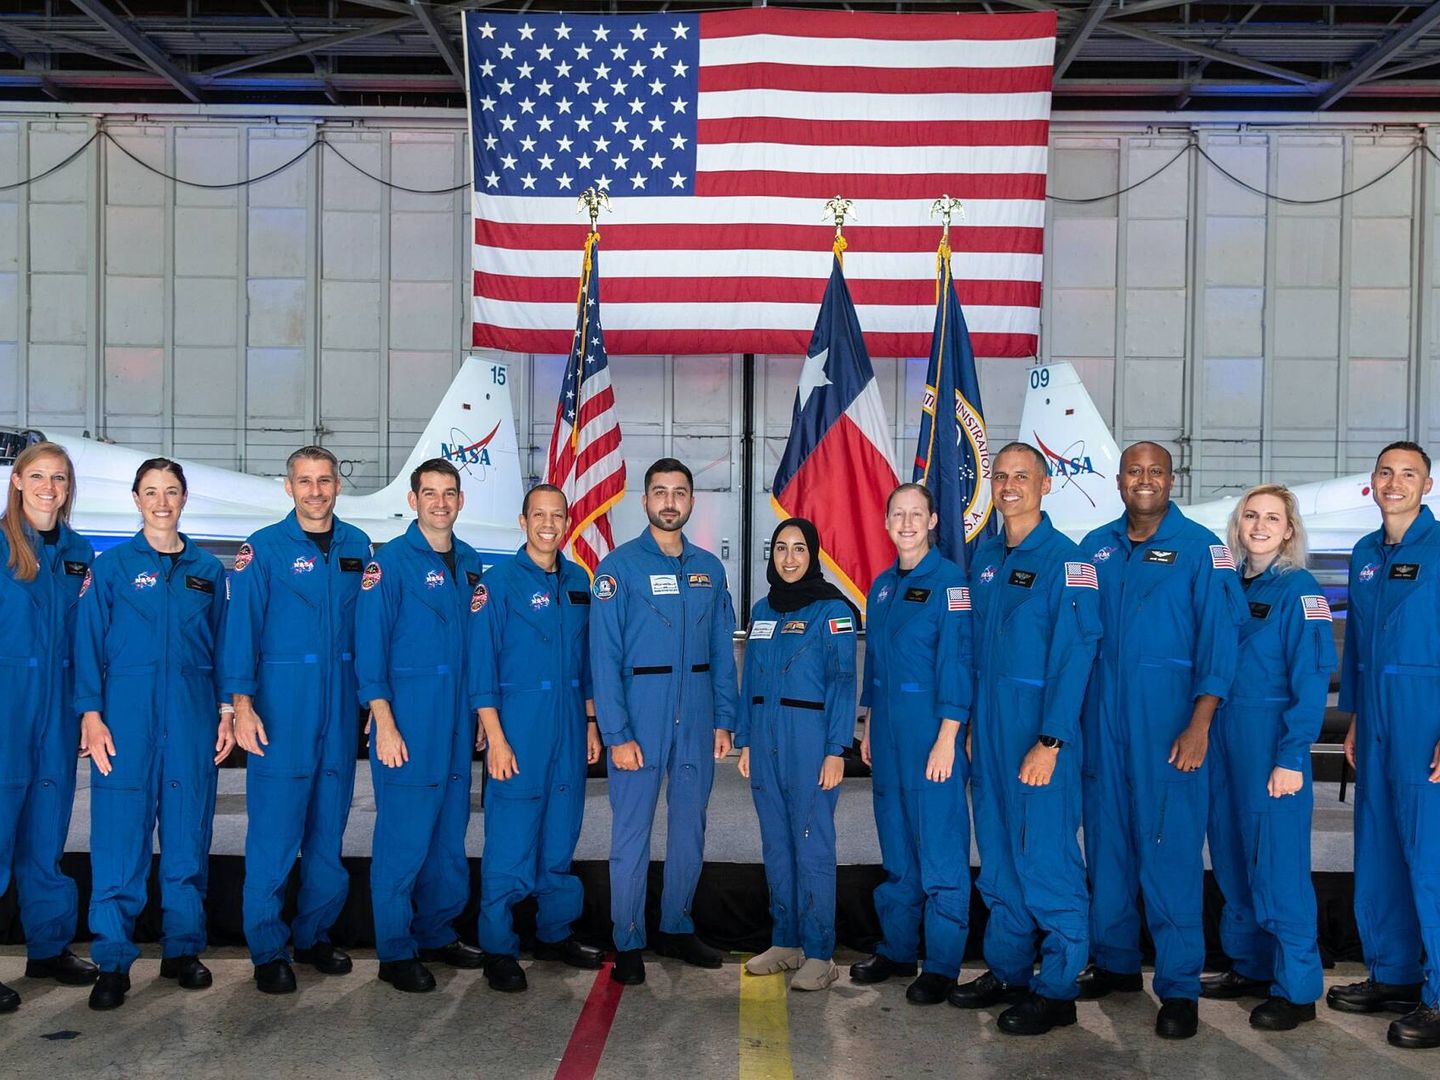 La promoción de astronautas de 2022 de la NASA, grupo 23, alias Las Moscas. Todos son posibles candidatos a viajar en futuras misiones lunares. (NASA)